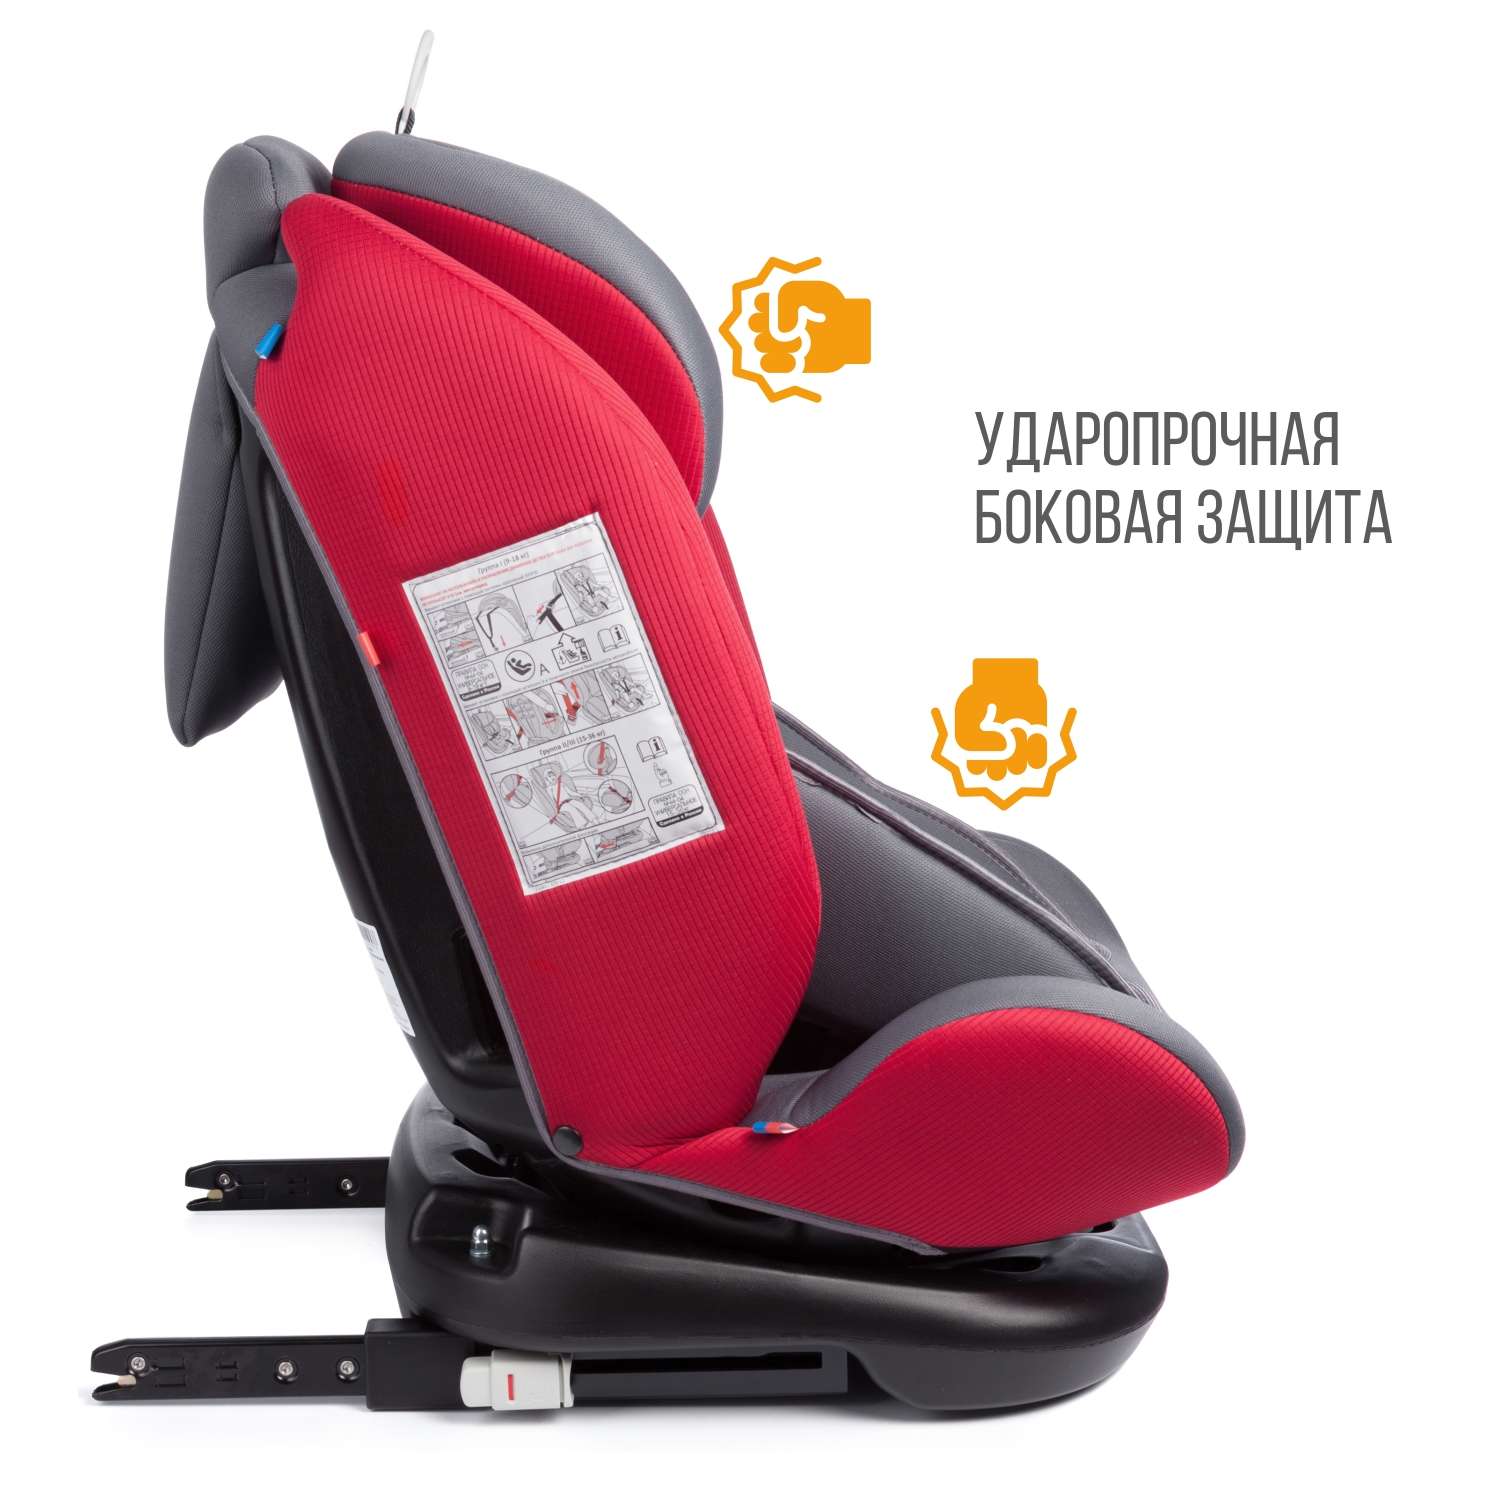 Автомобильное кресло ZLATEK Cruiser Iso - фото 14